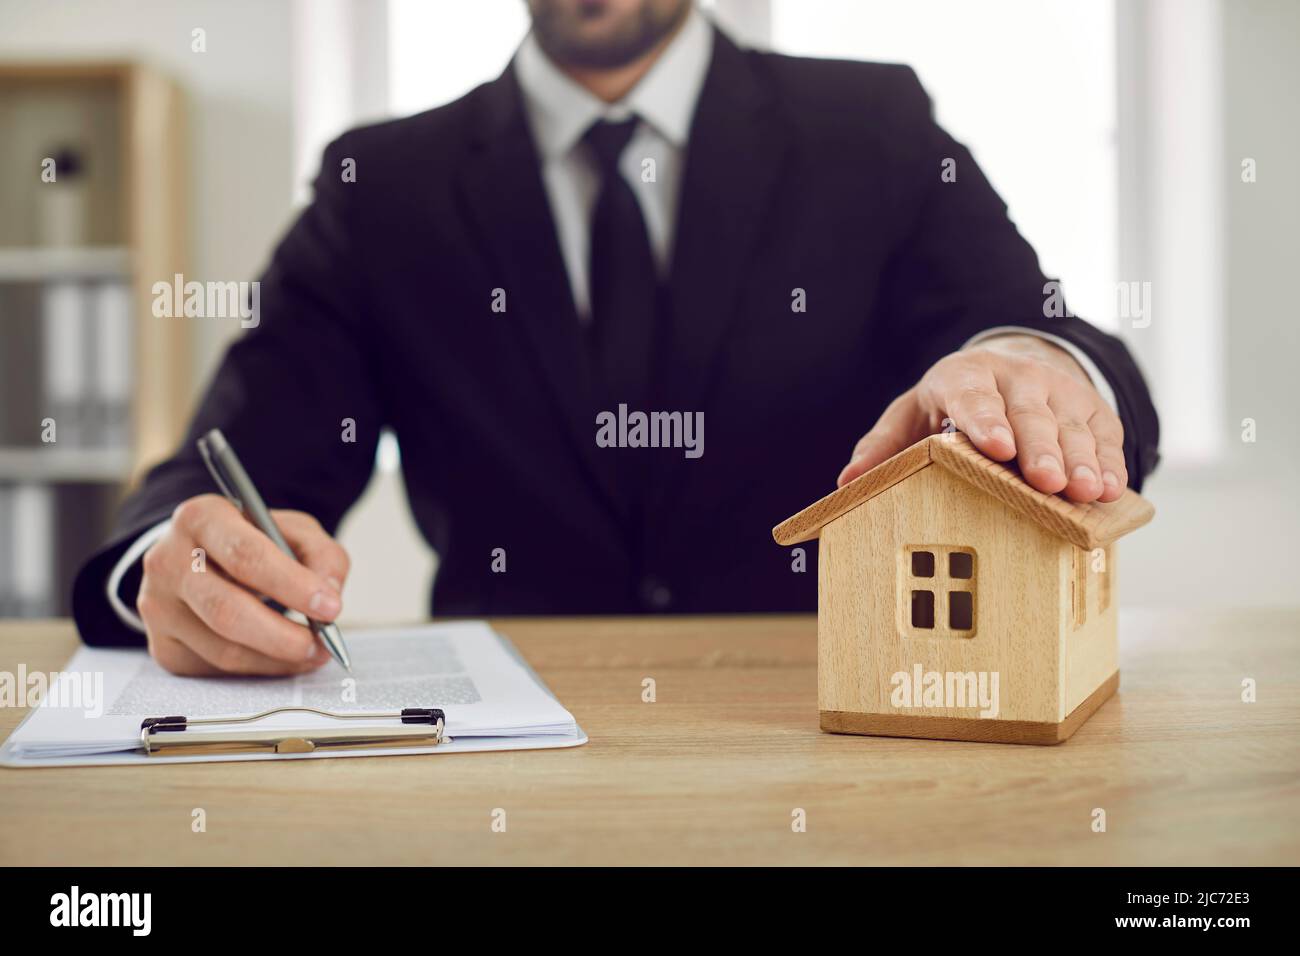 L'homme au bureau de l'agent immobilier met sa main sur la maison de jouets et signe un accord hypothécaire Banque D'Images